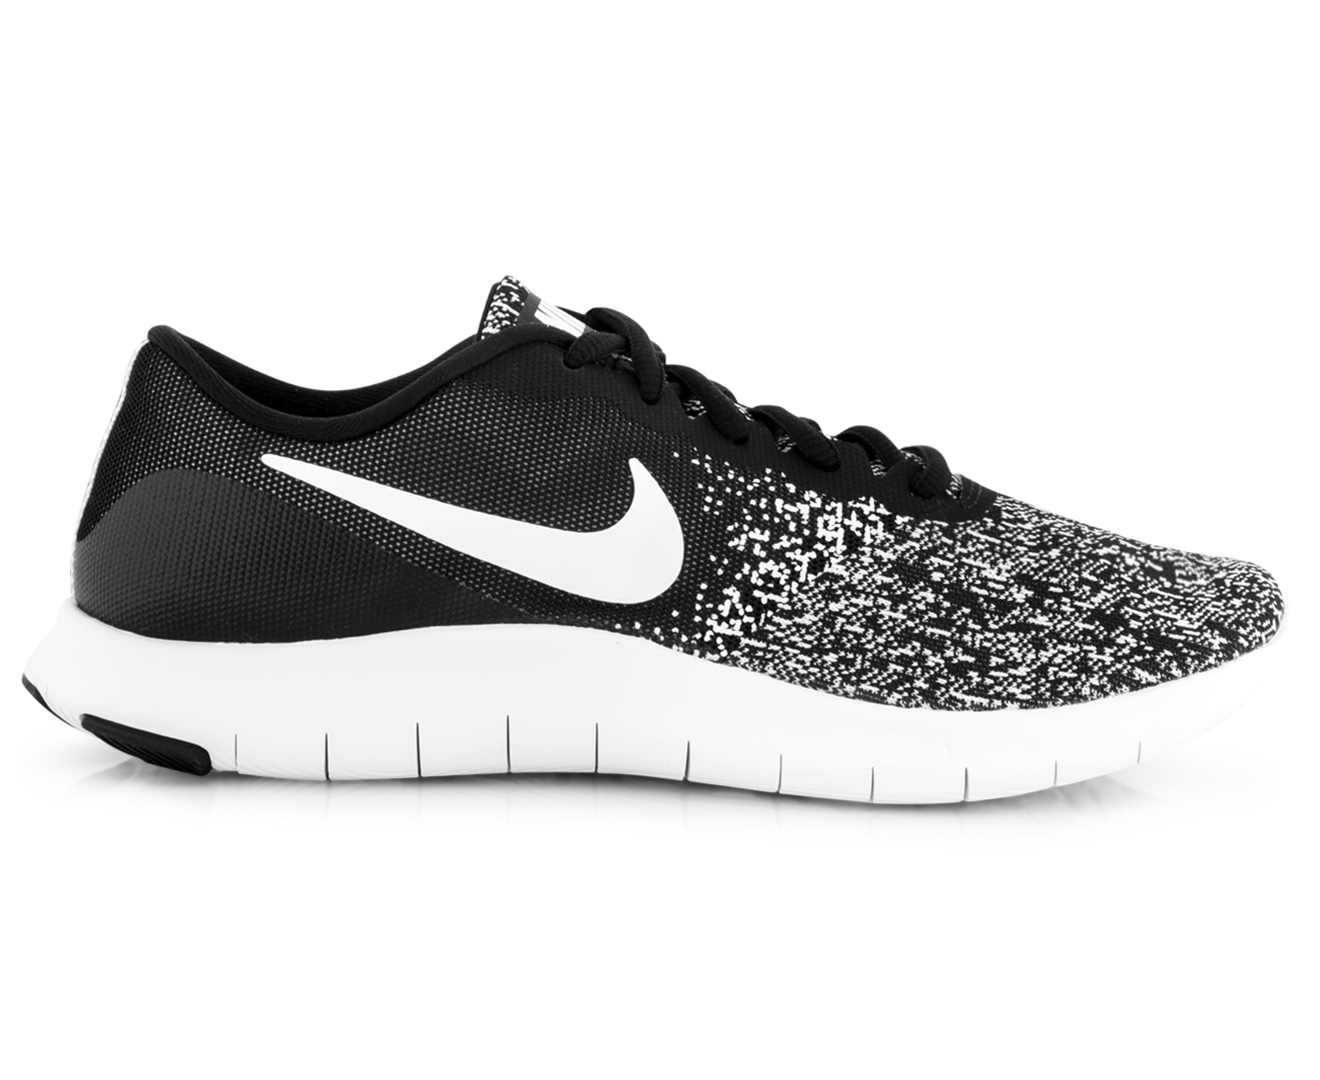 Nike Women's Flex Contact Shoe - Black/White | Catch.co.nz